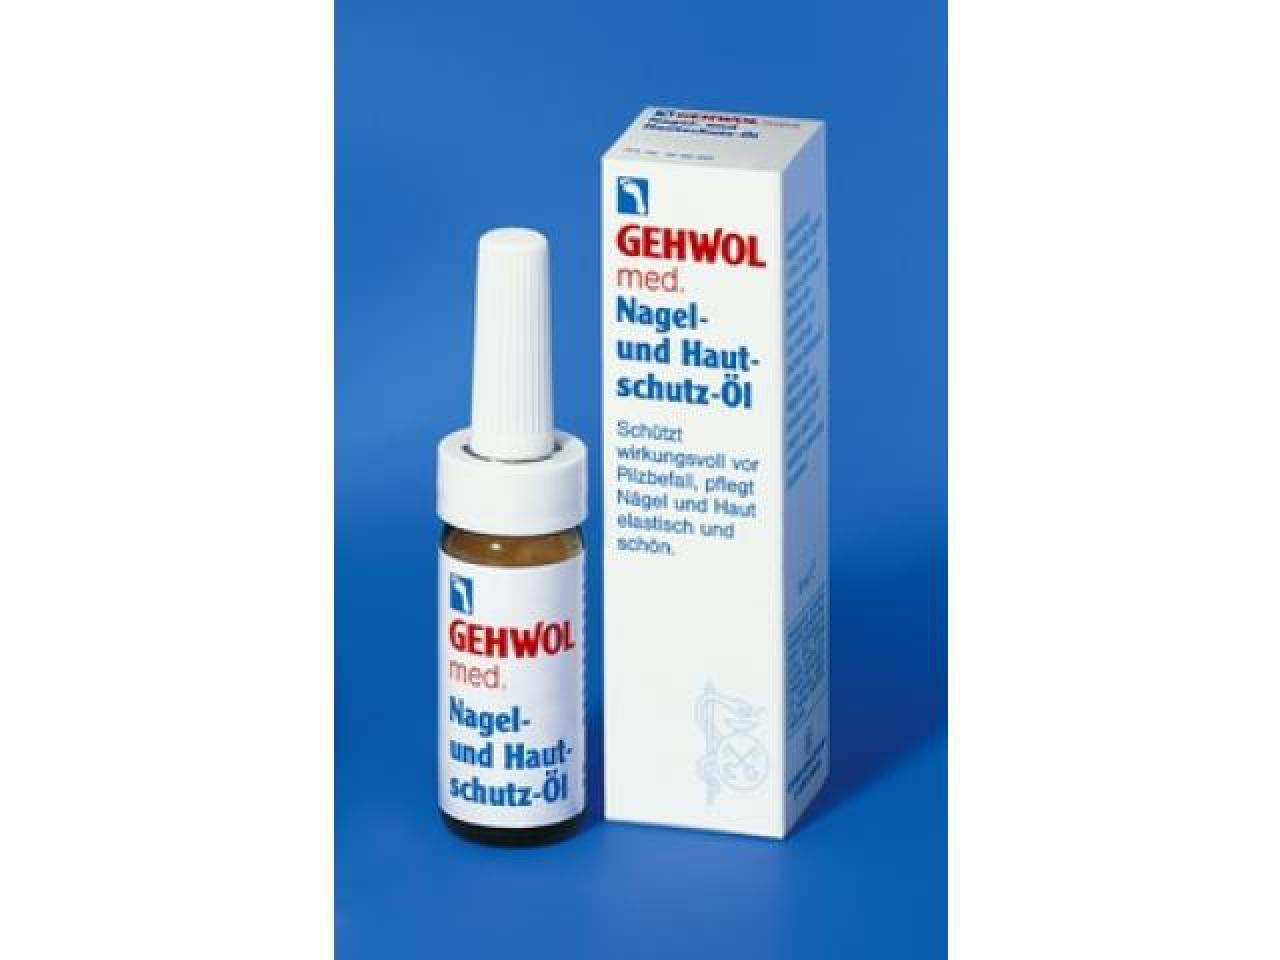 GEHWOL med Nagel- und Hautschutz-Öl 15 ml